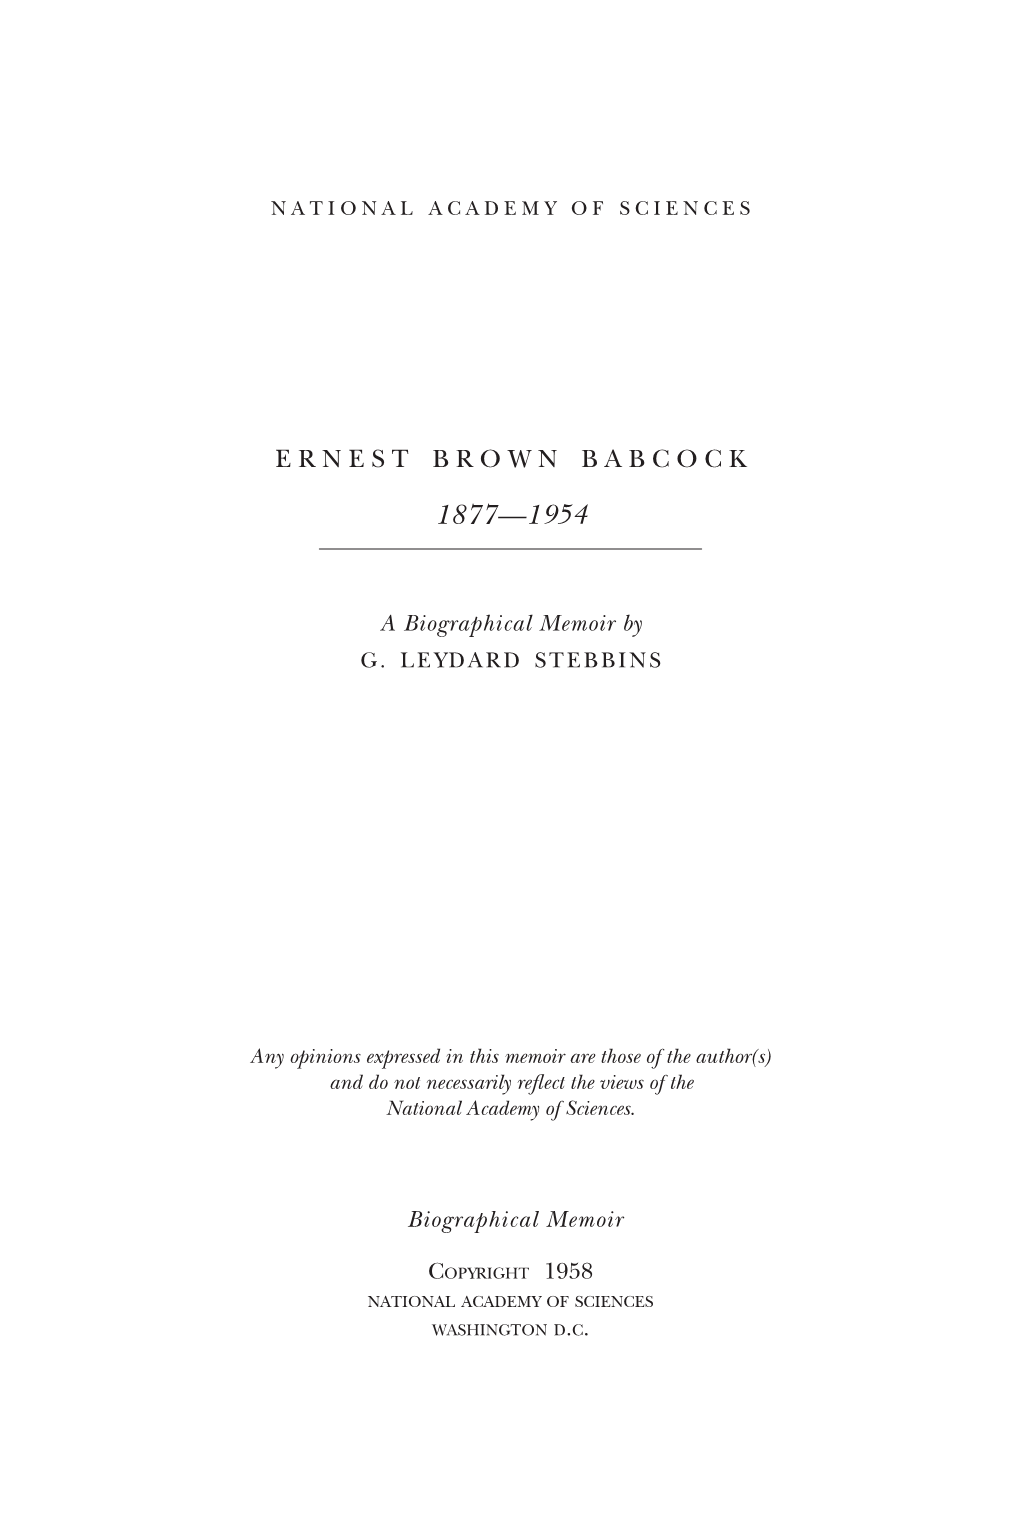 Ernest Brown Babcock